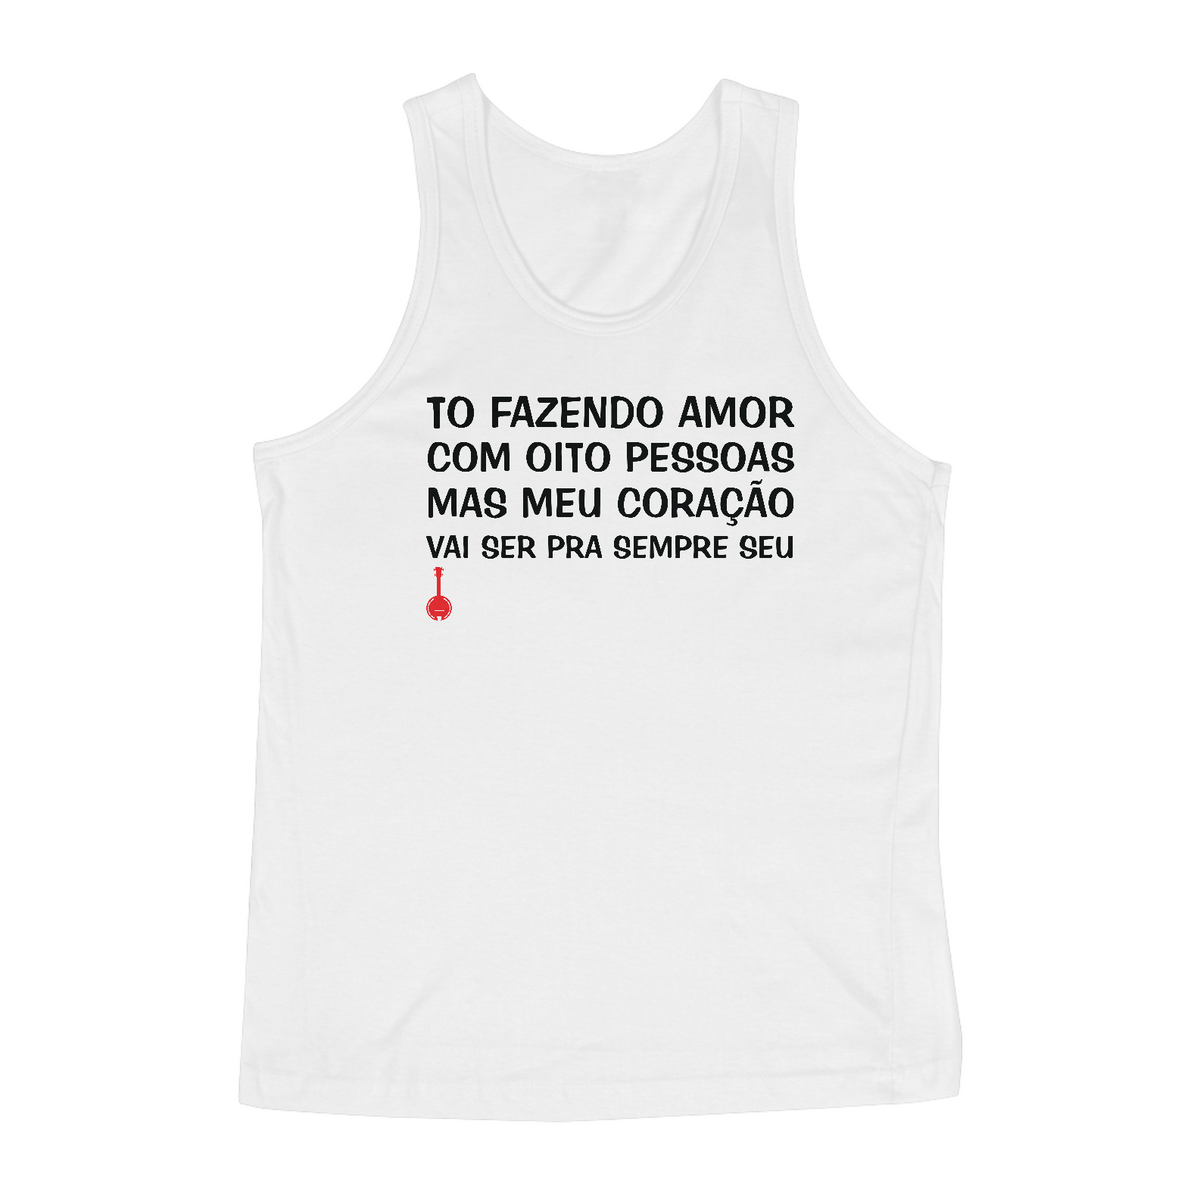 Nome do produto: Camiseta Regata To Fazendo Amor com Oito Pessoas - Branca